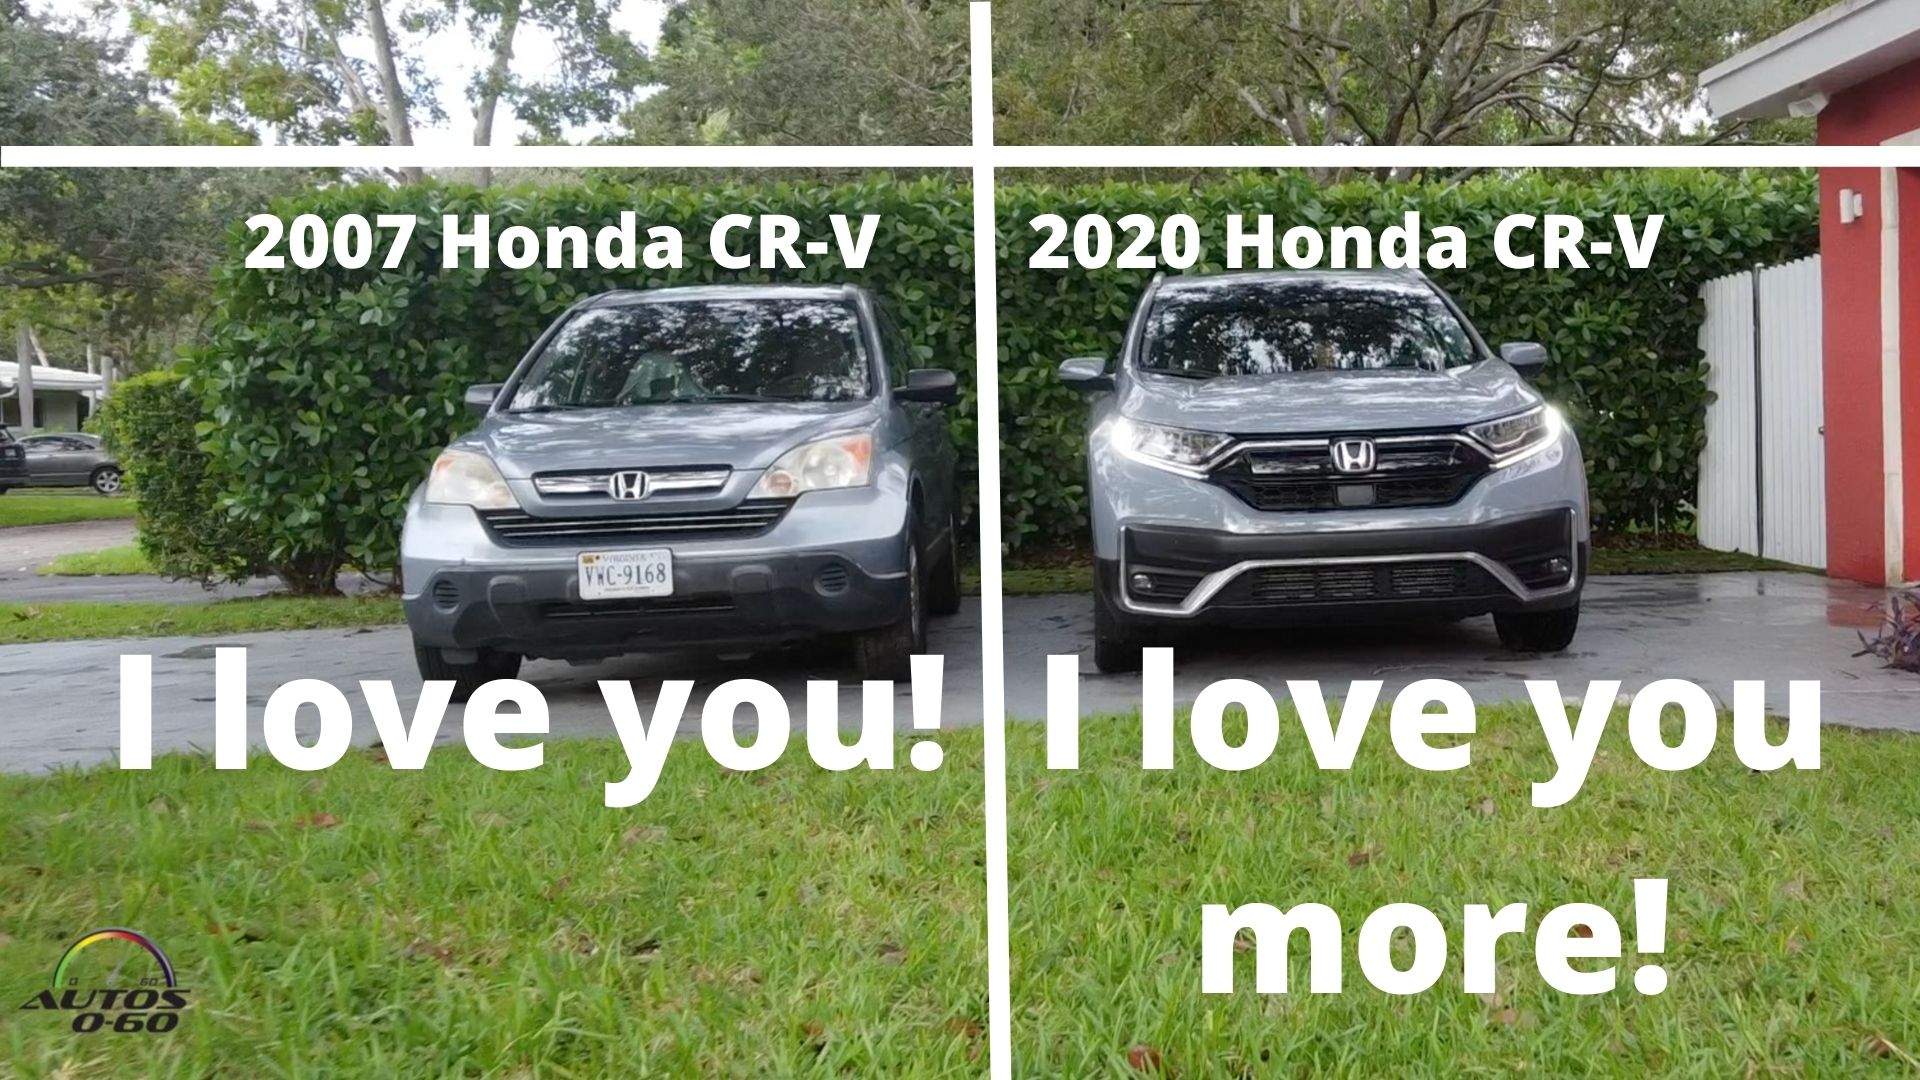 Real life Test Drive: 2007 Honda CR-V vs 2020 Honda CR-V ... no contest!